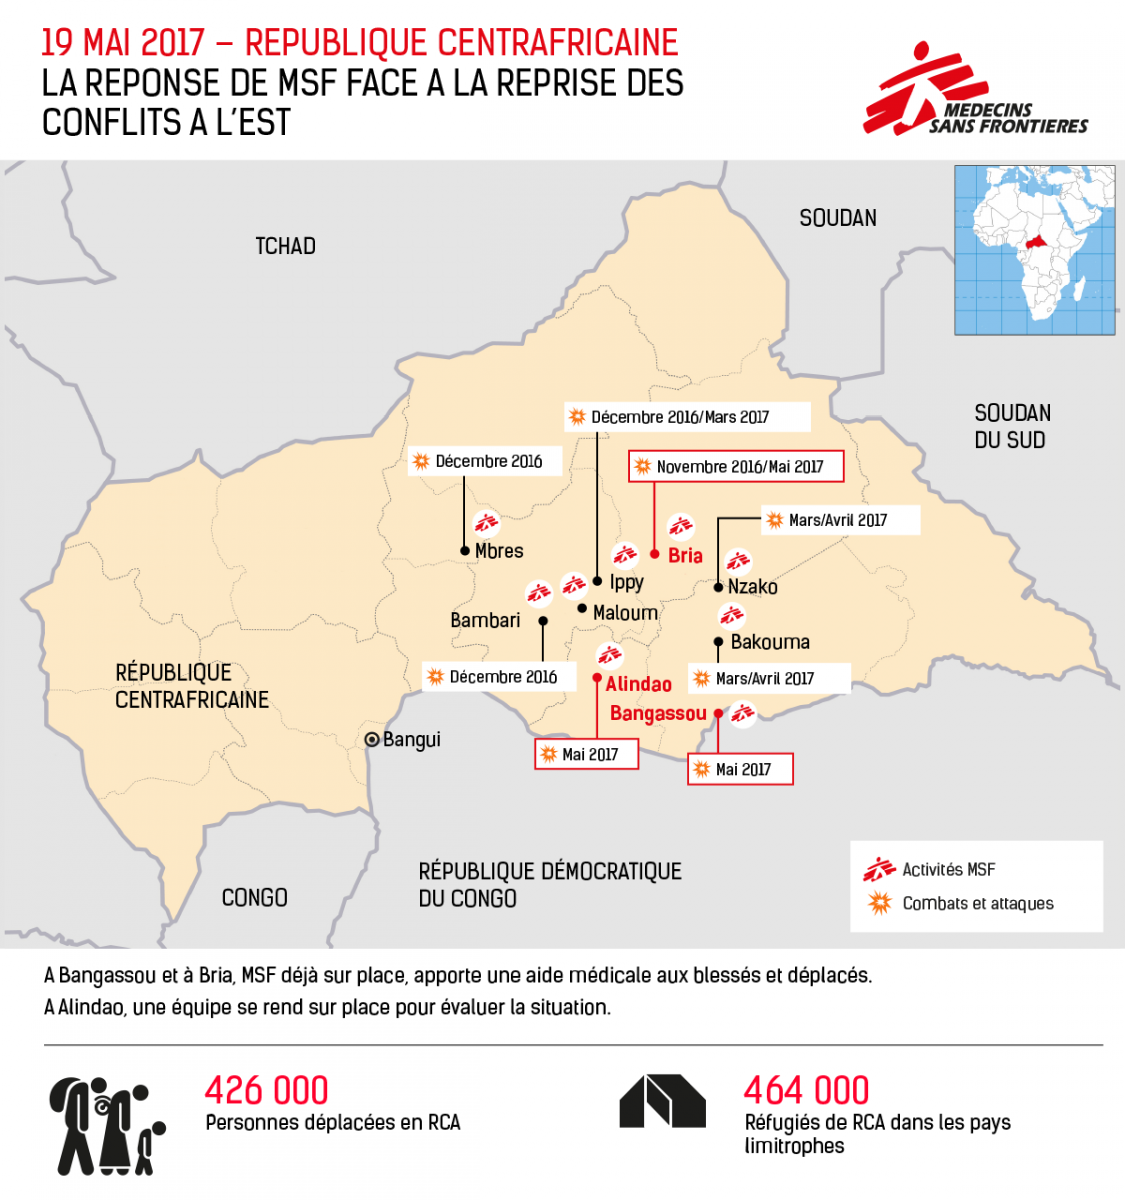 La réponse de MSF face à la reprise des conflits